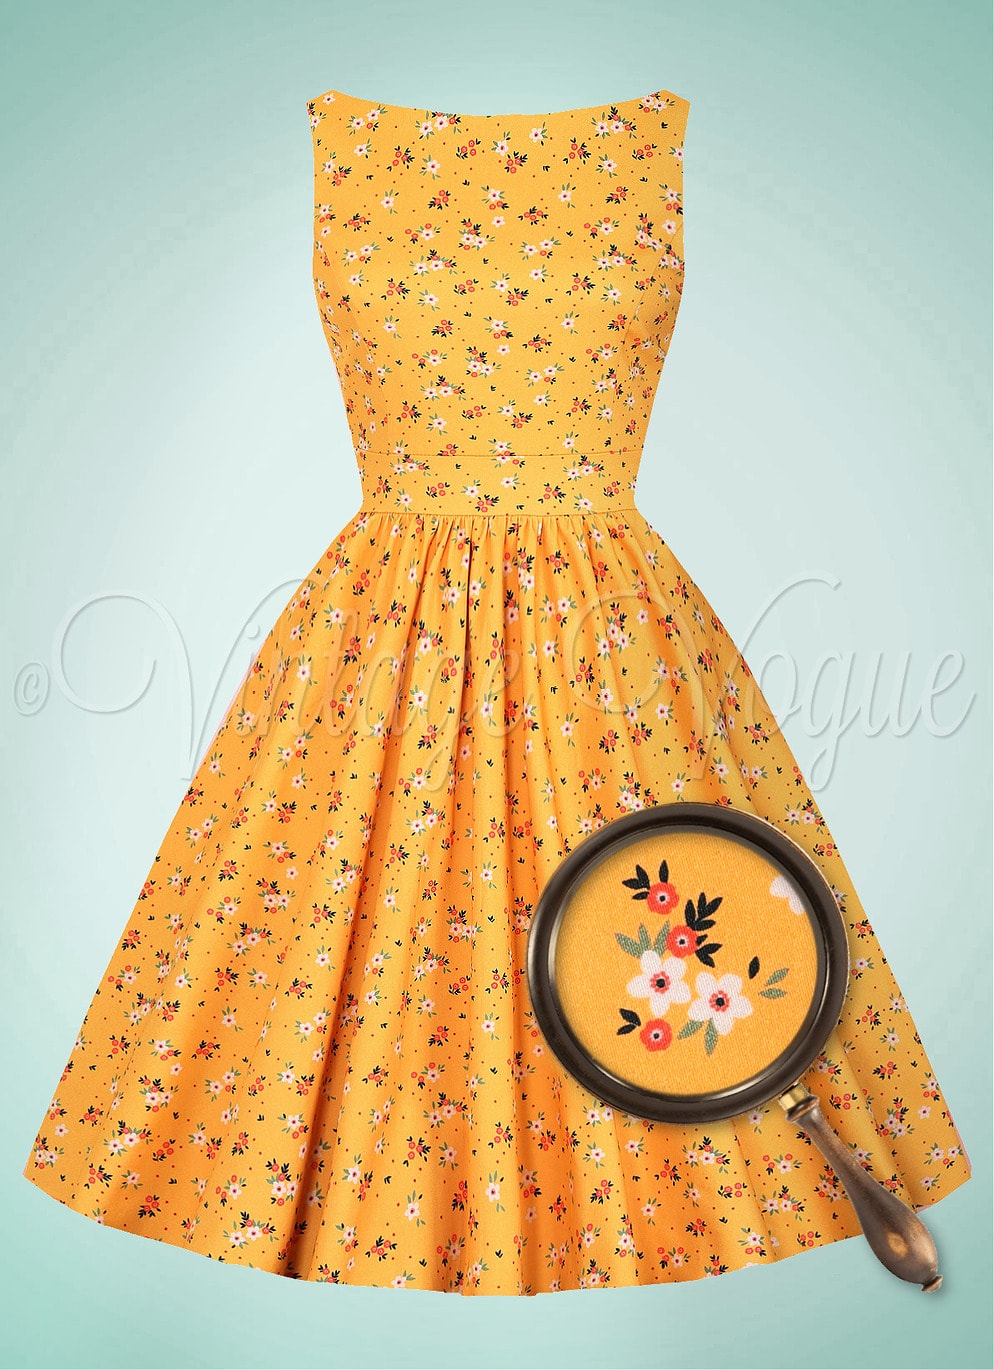 Lady Vintage 50's Retro Swing Floral Kleid Yellow Ditsy Tea Dress in Senfgelb 50er Jahre Petticoat Damenkleid Blumen Rosen Geblümt Hochzeitsgast Sommerkleid